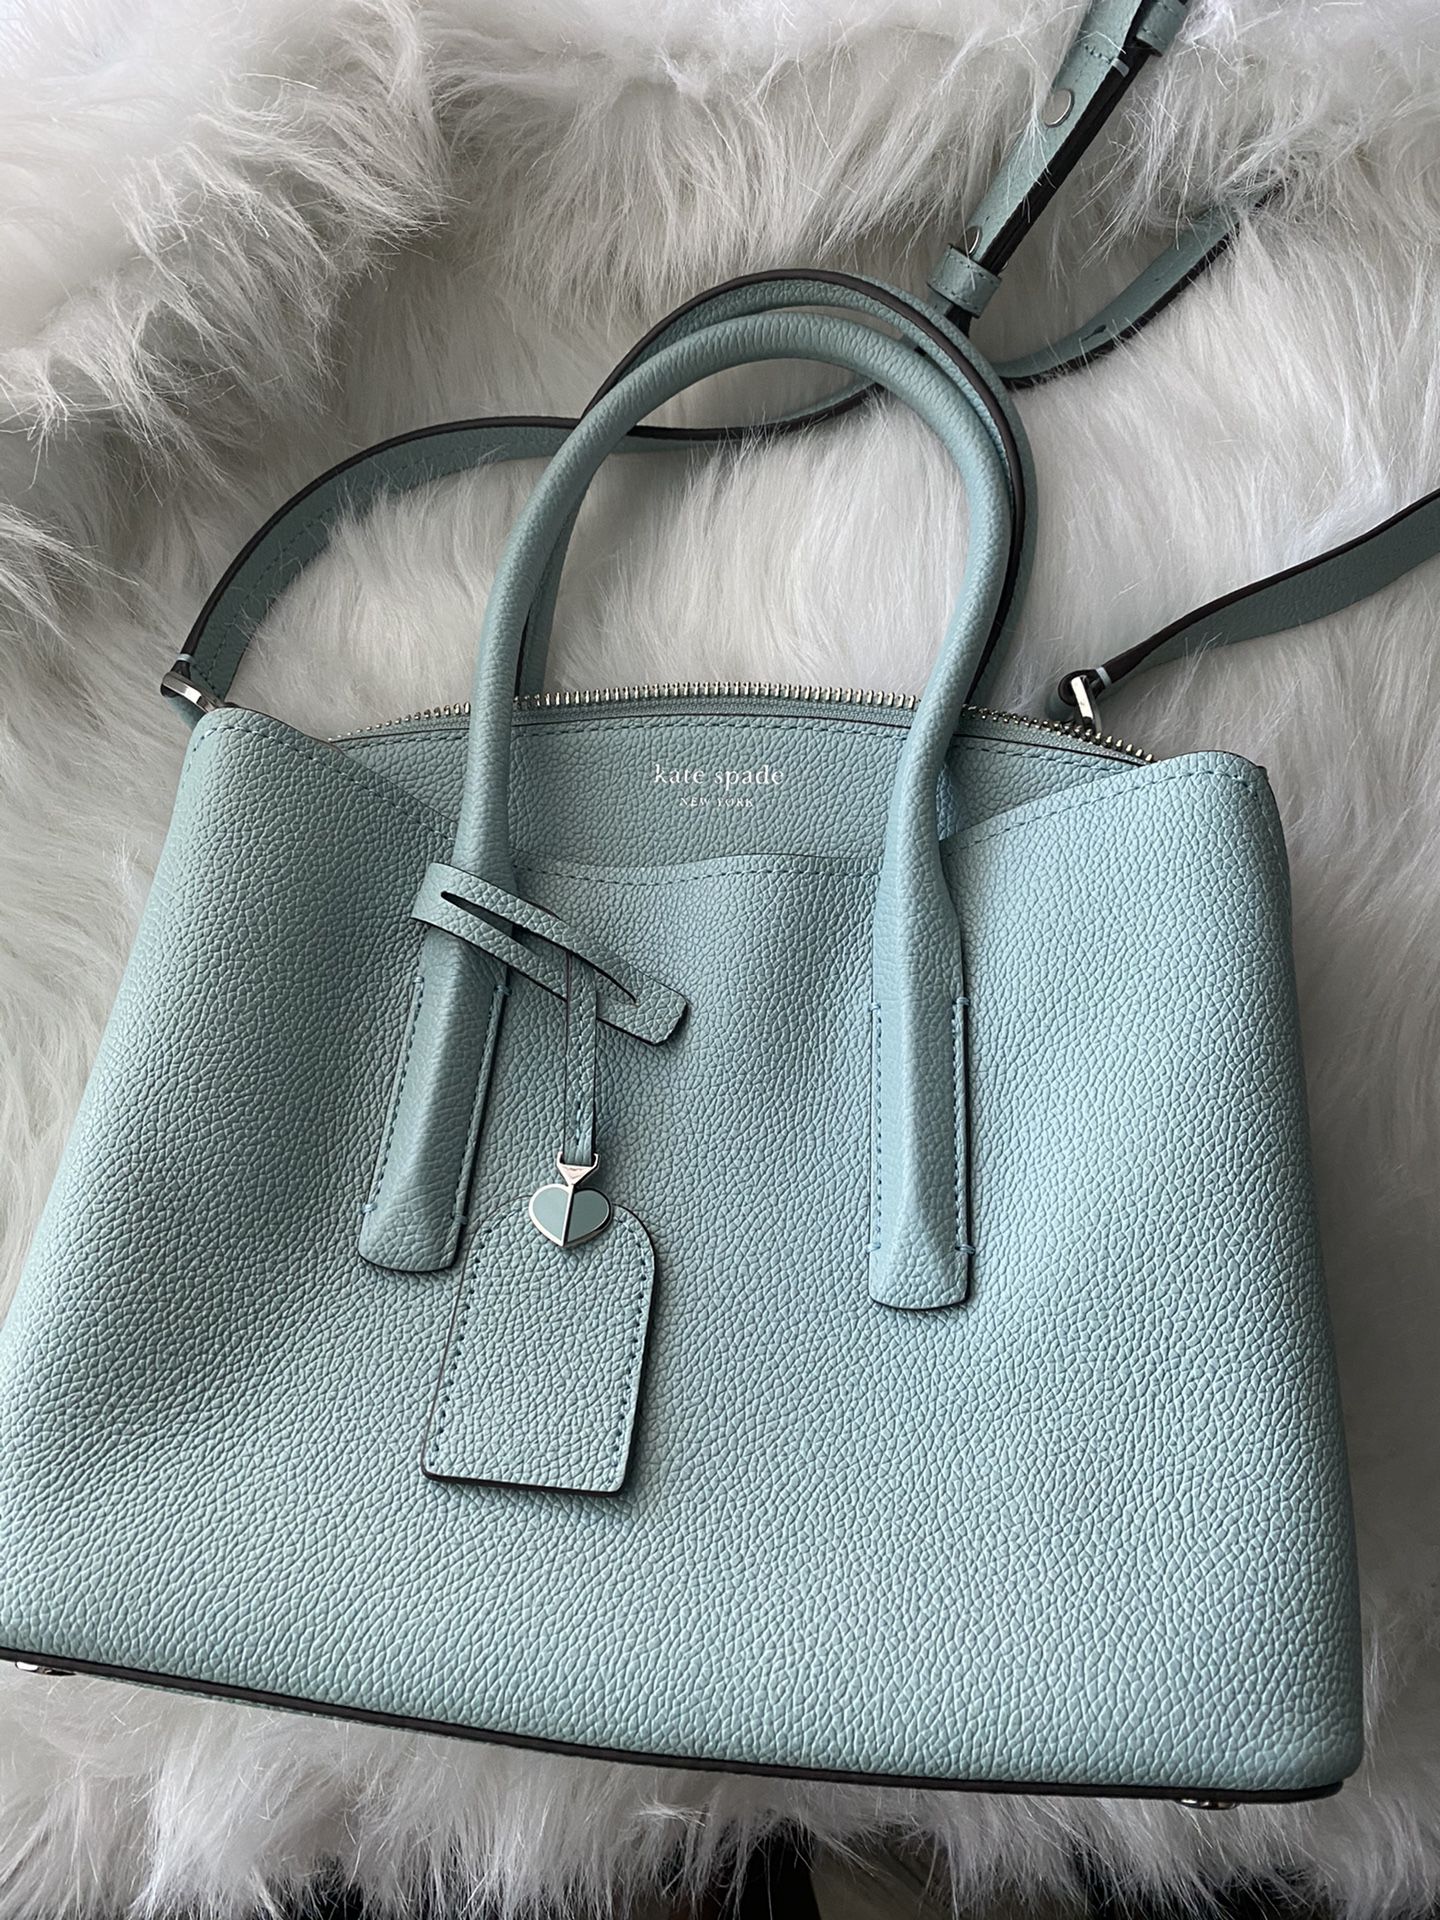 Blue Kate Spade handbag